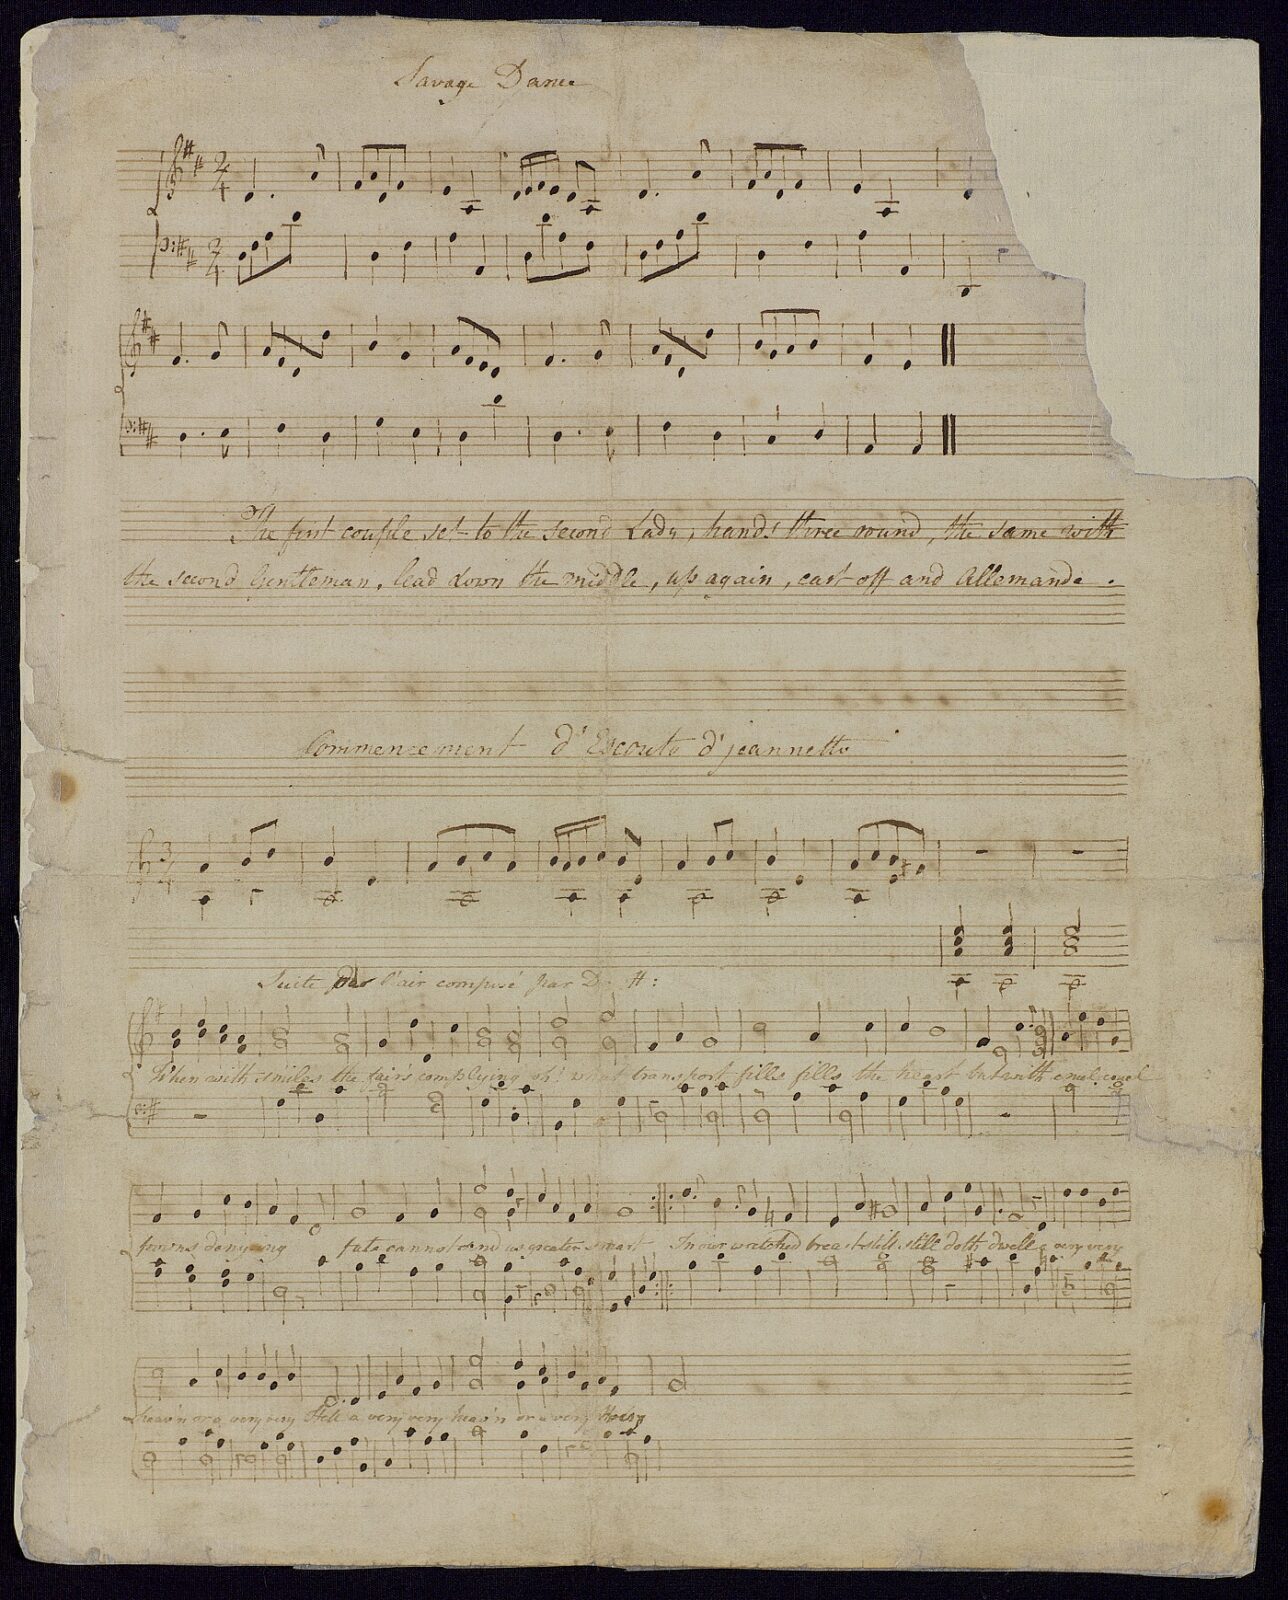 Handwritten sheet of manuscript, in the hand of either Jane Austen or her cousin, Eliza de Feuillide